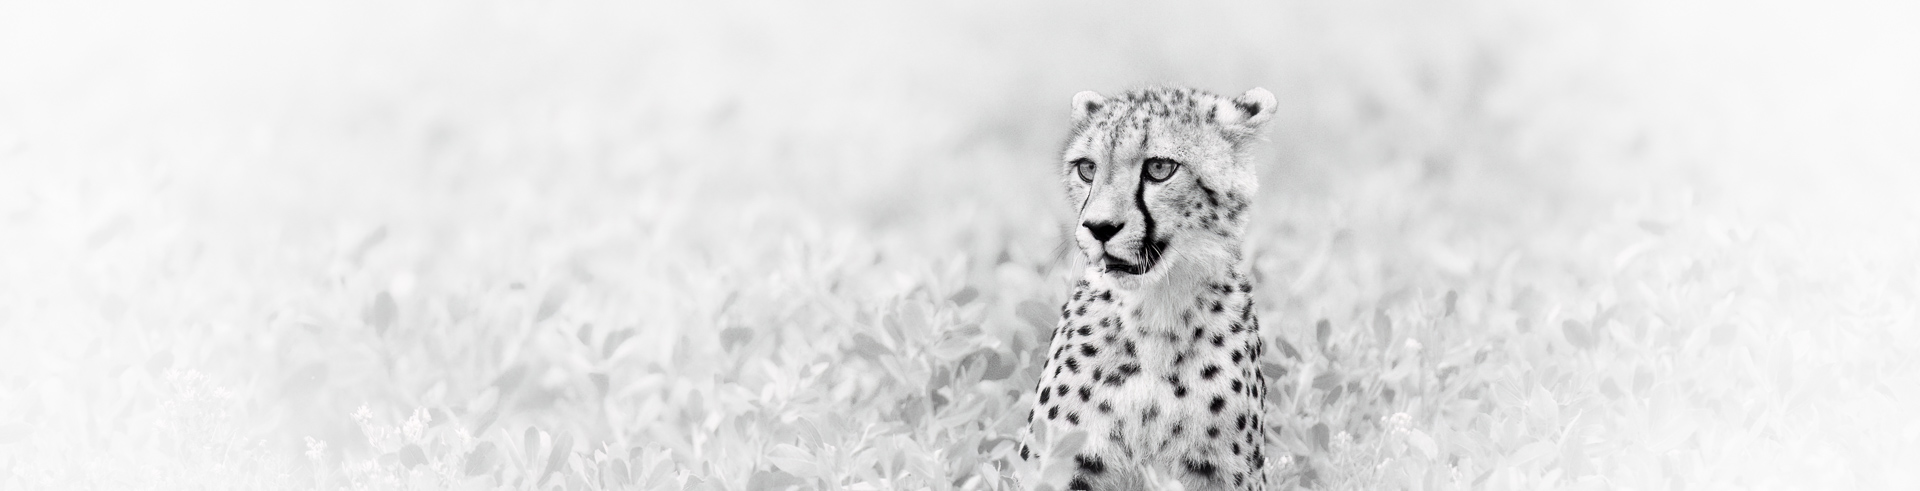 le guépard en noir et blanc